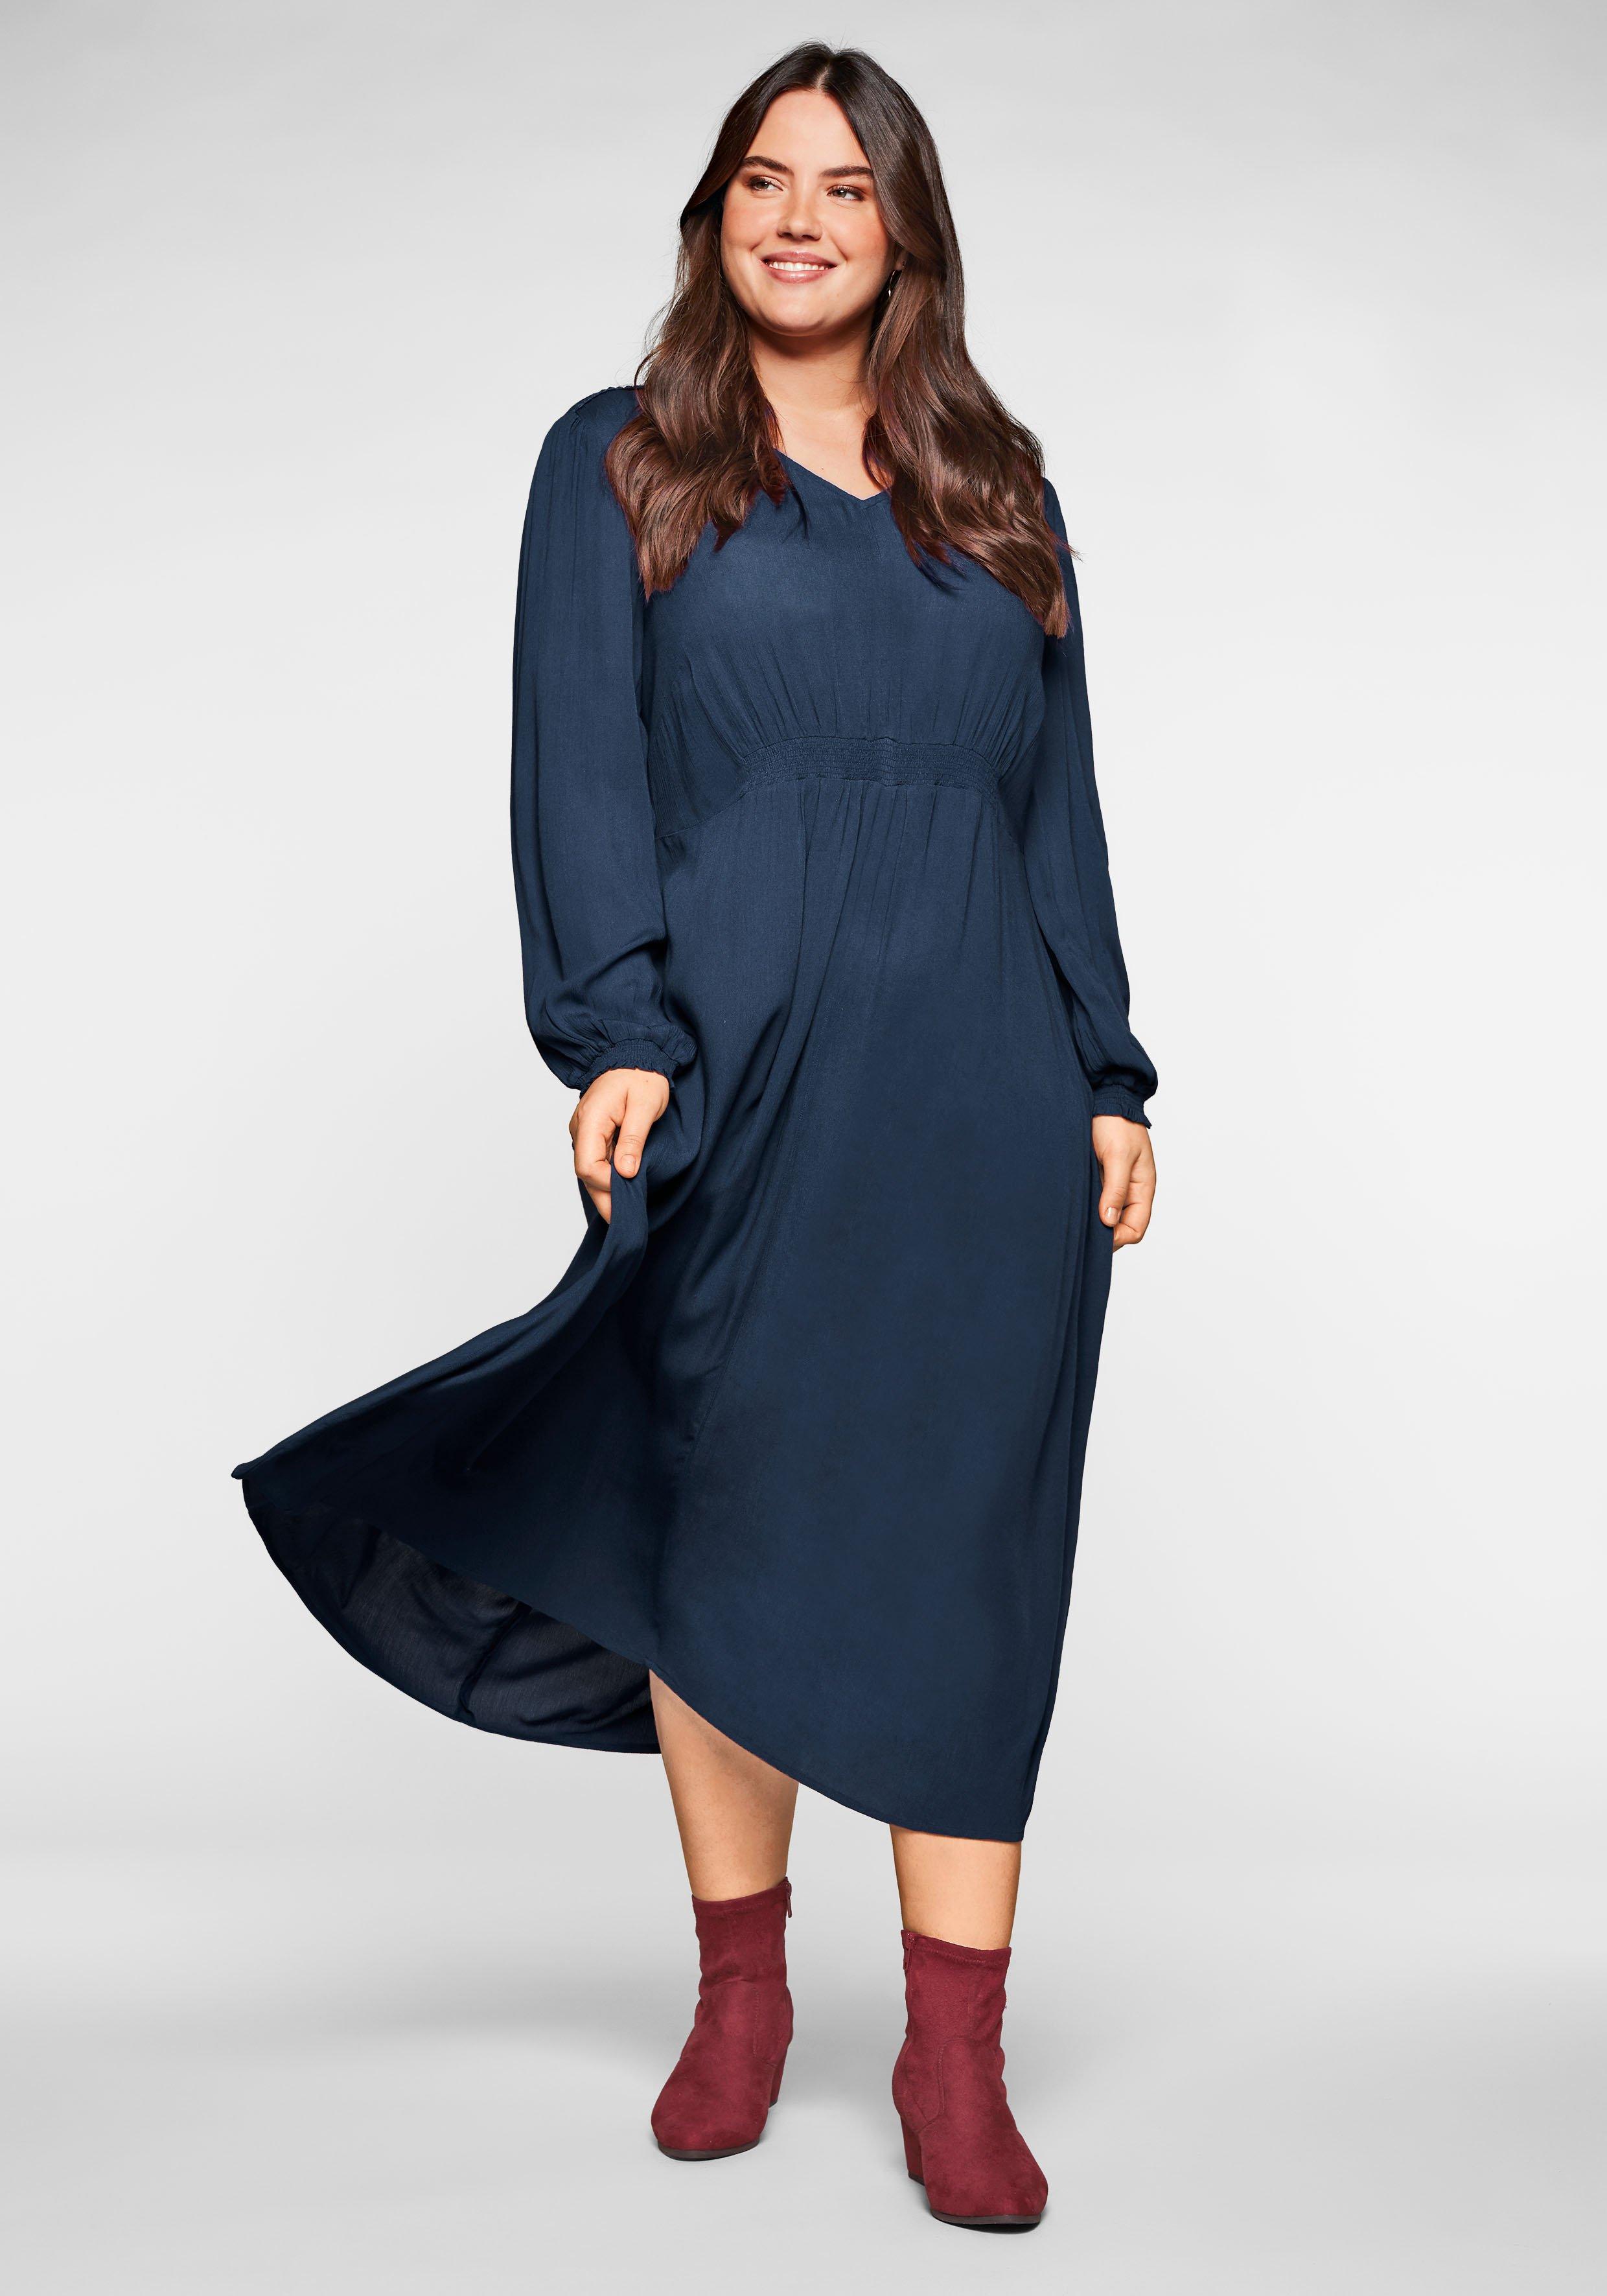 Kleid in Crêpe-Qualität, mit Smok-Einsätzen - nachtblau | sheego | Jerseykleider